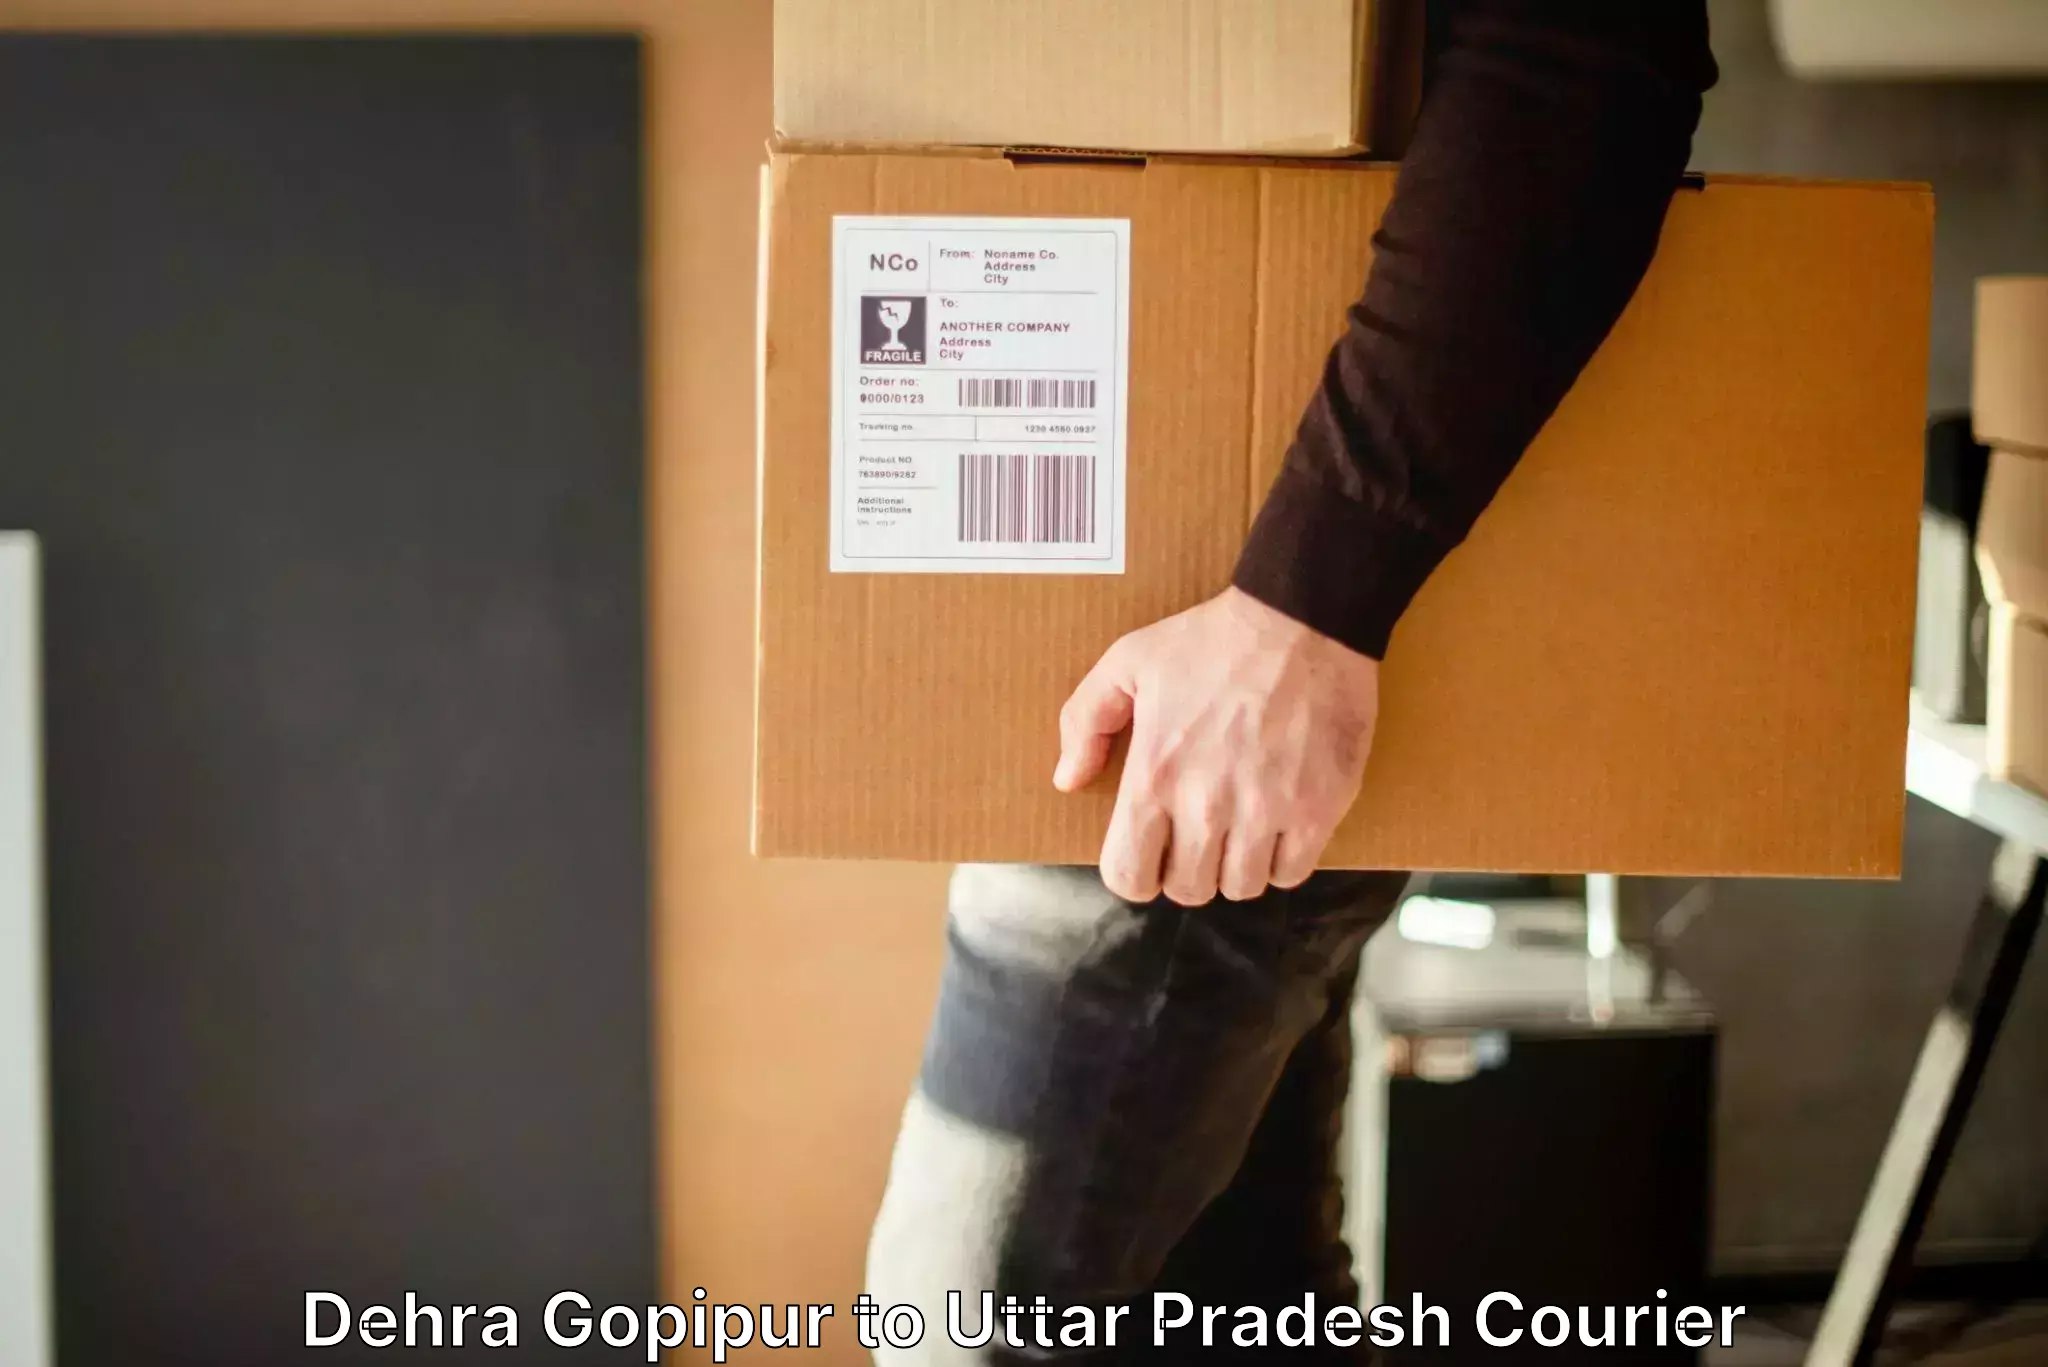 Baggage shipping experts Dehra Gopipur to Jalaun